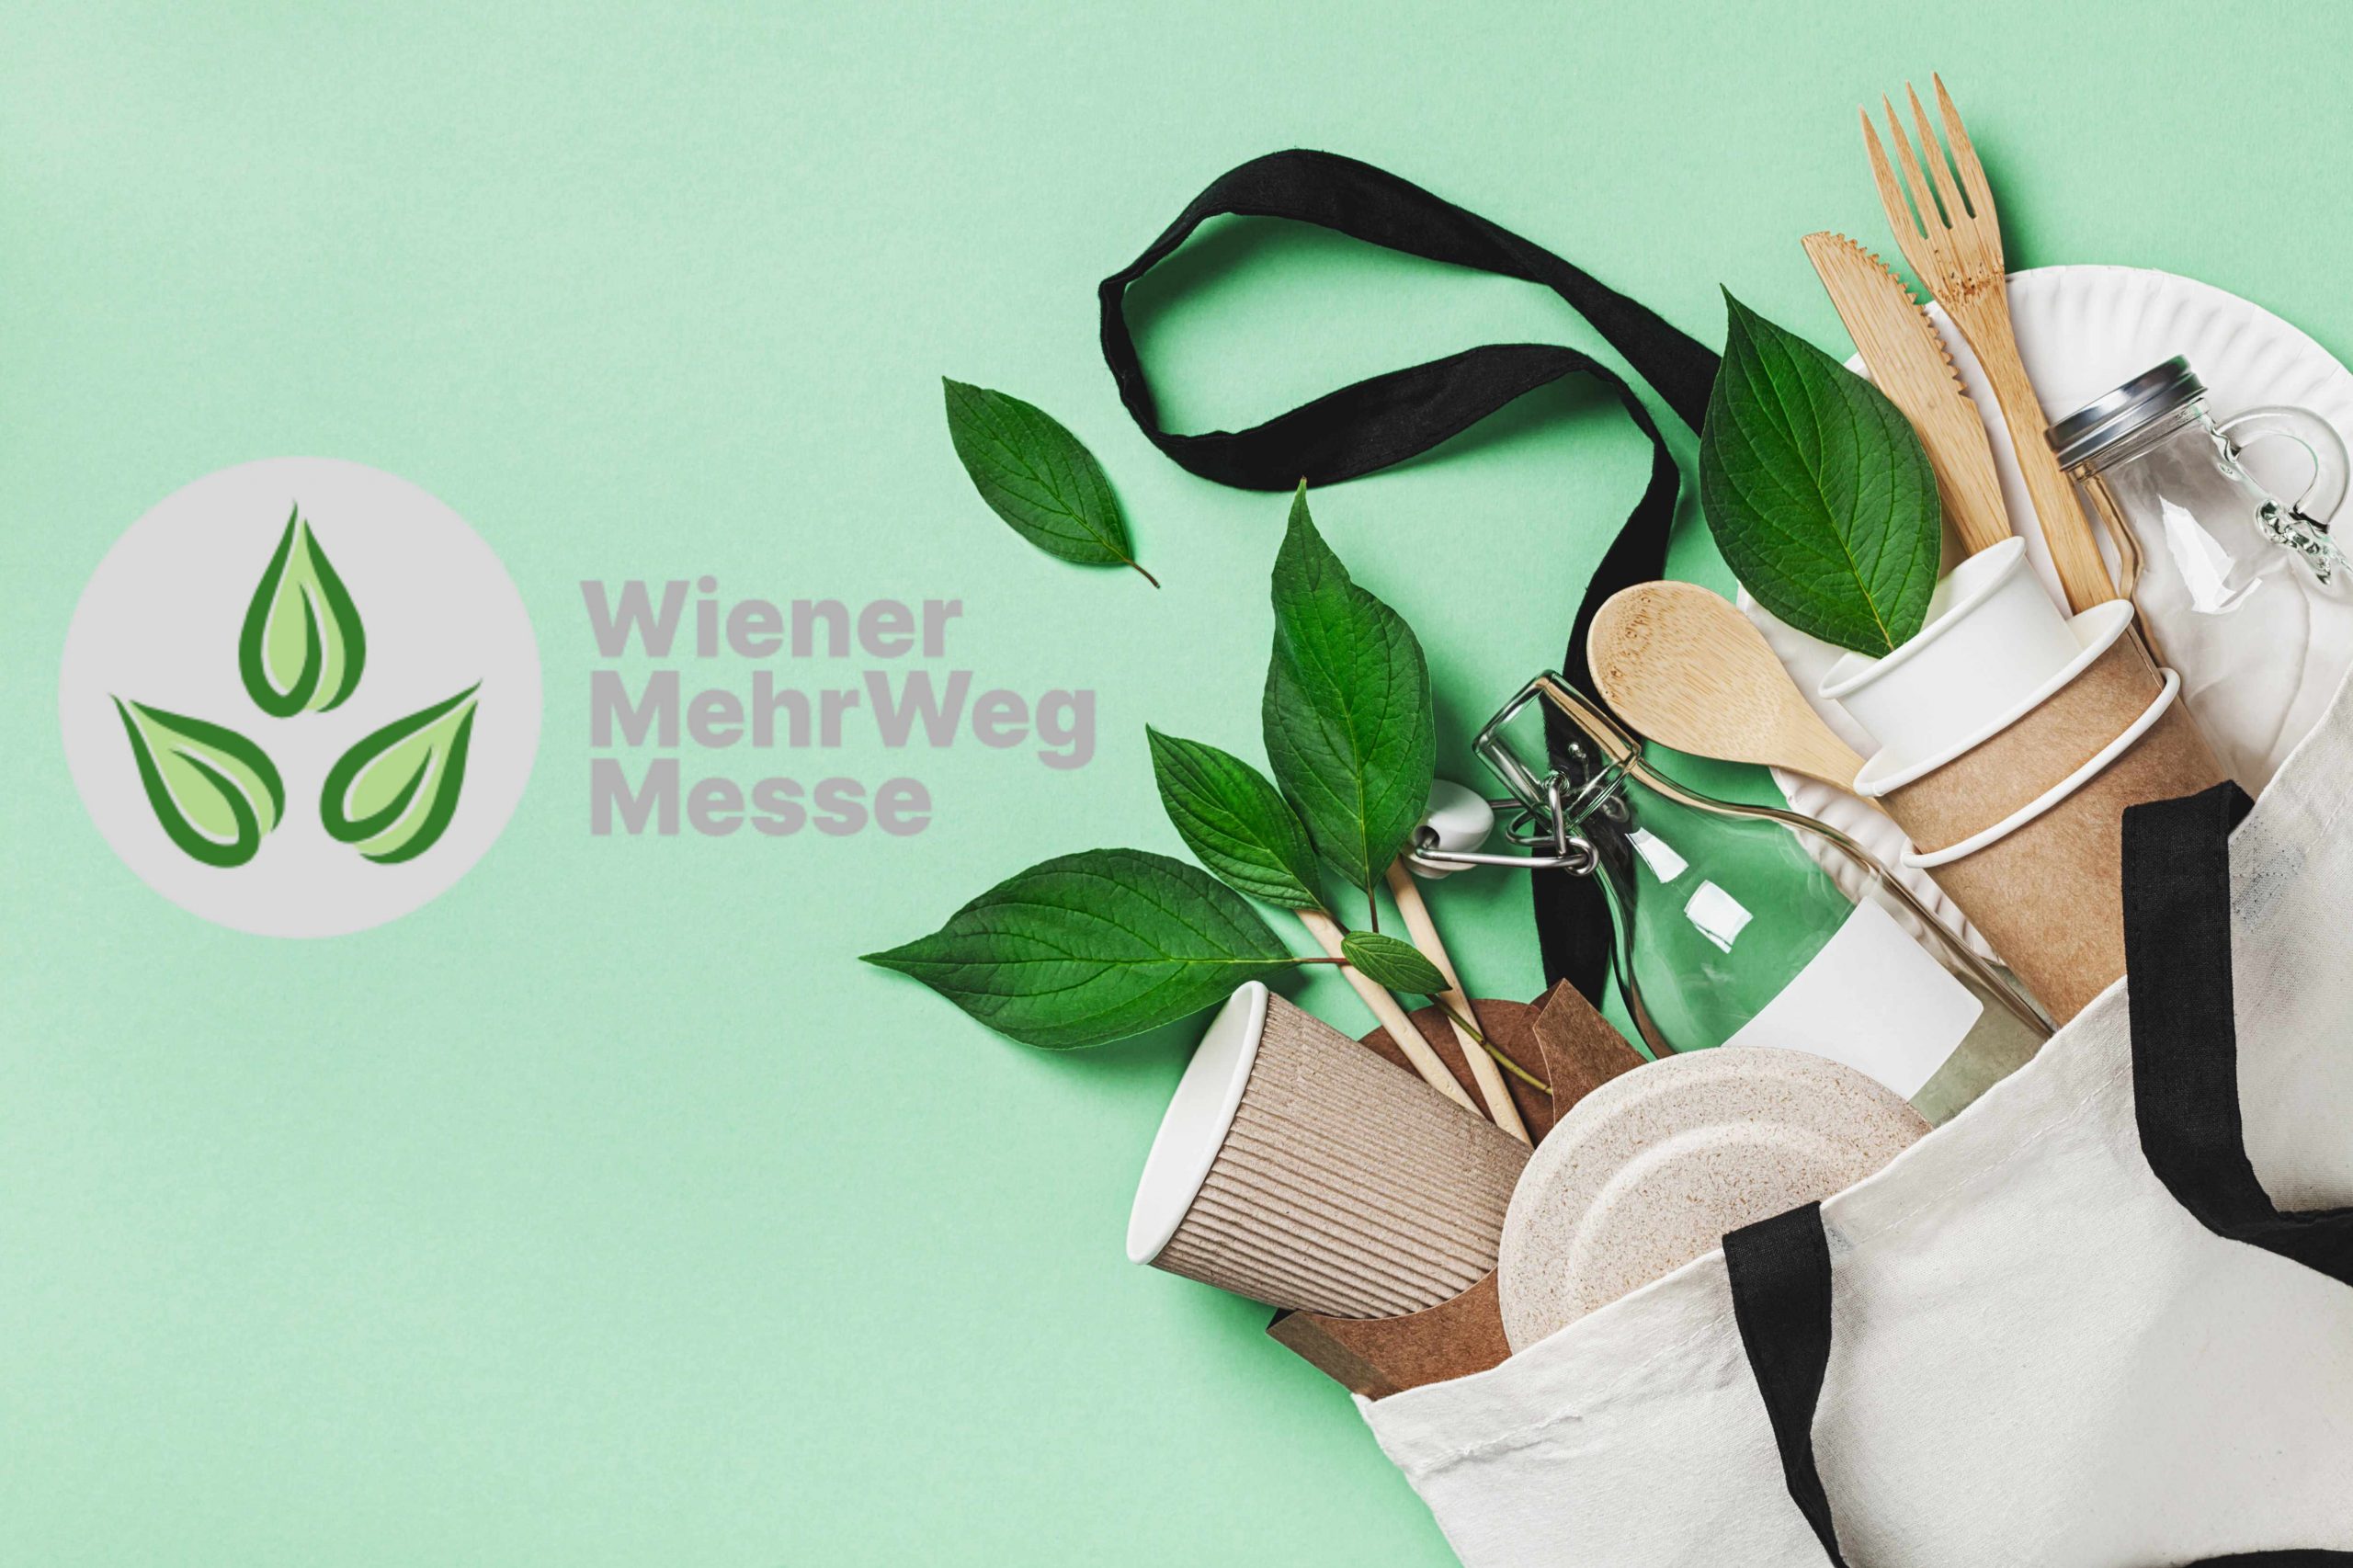 Wiener MehrwegMesse, Holzbesteck, grüne Blätter